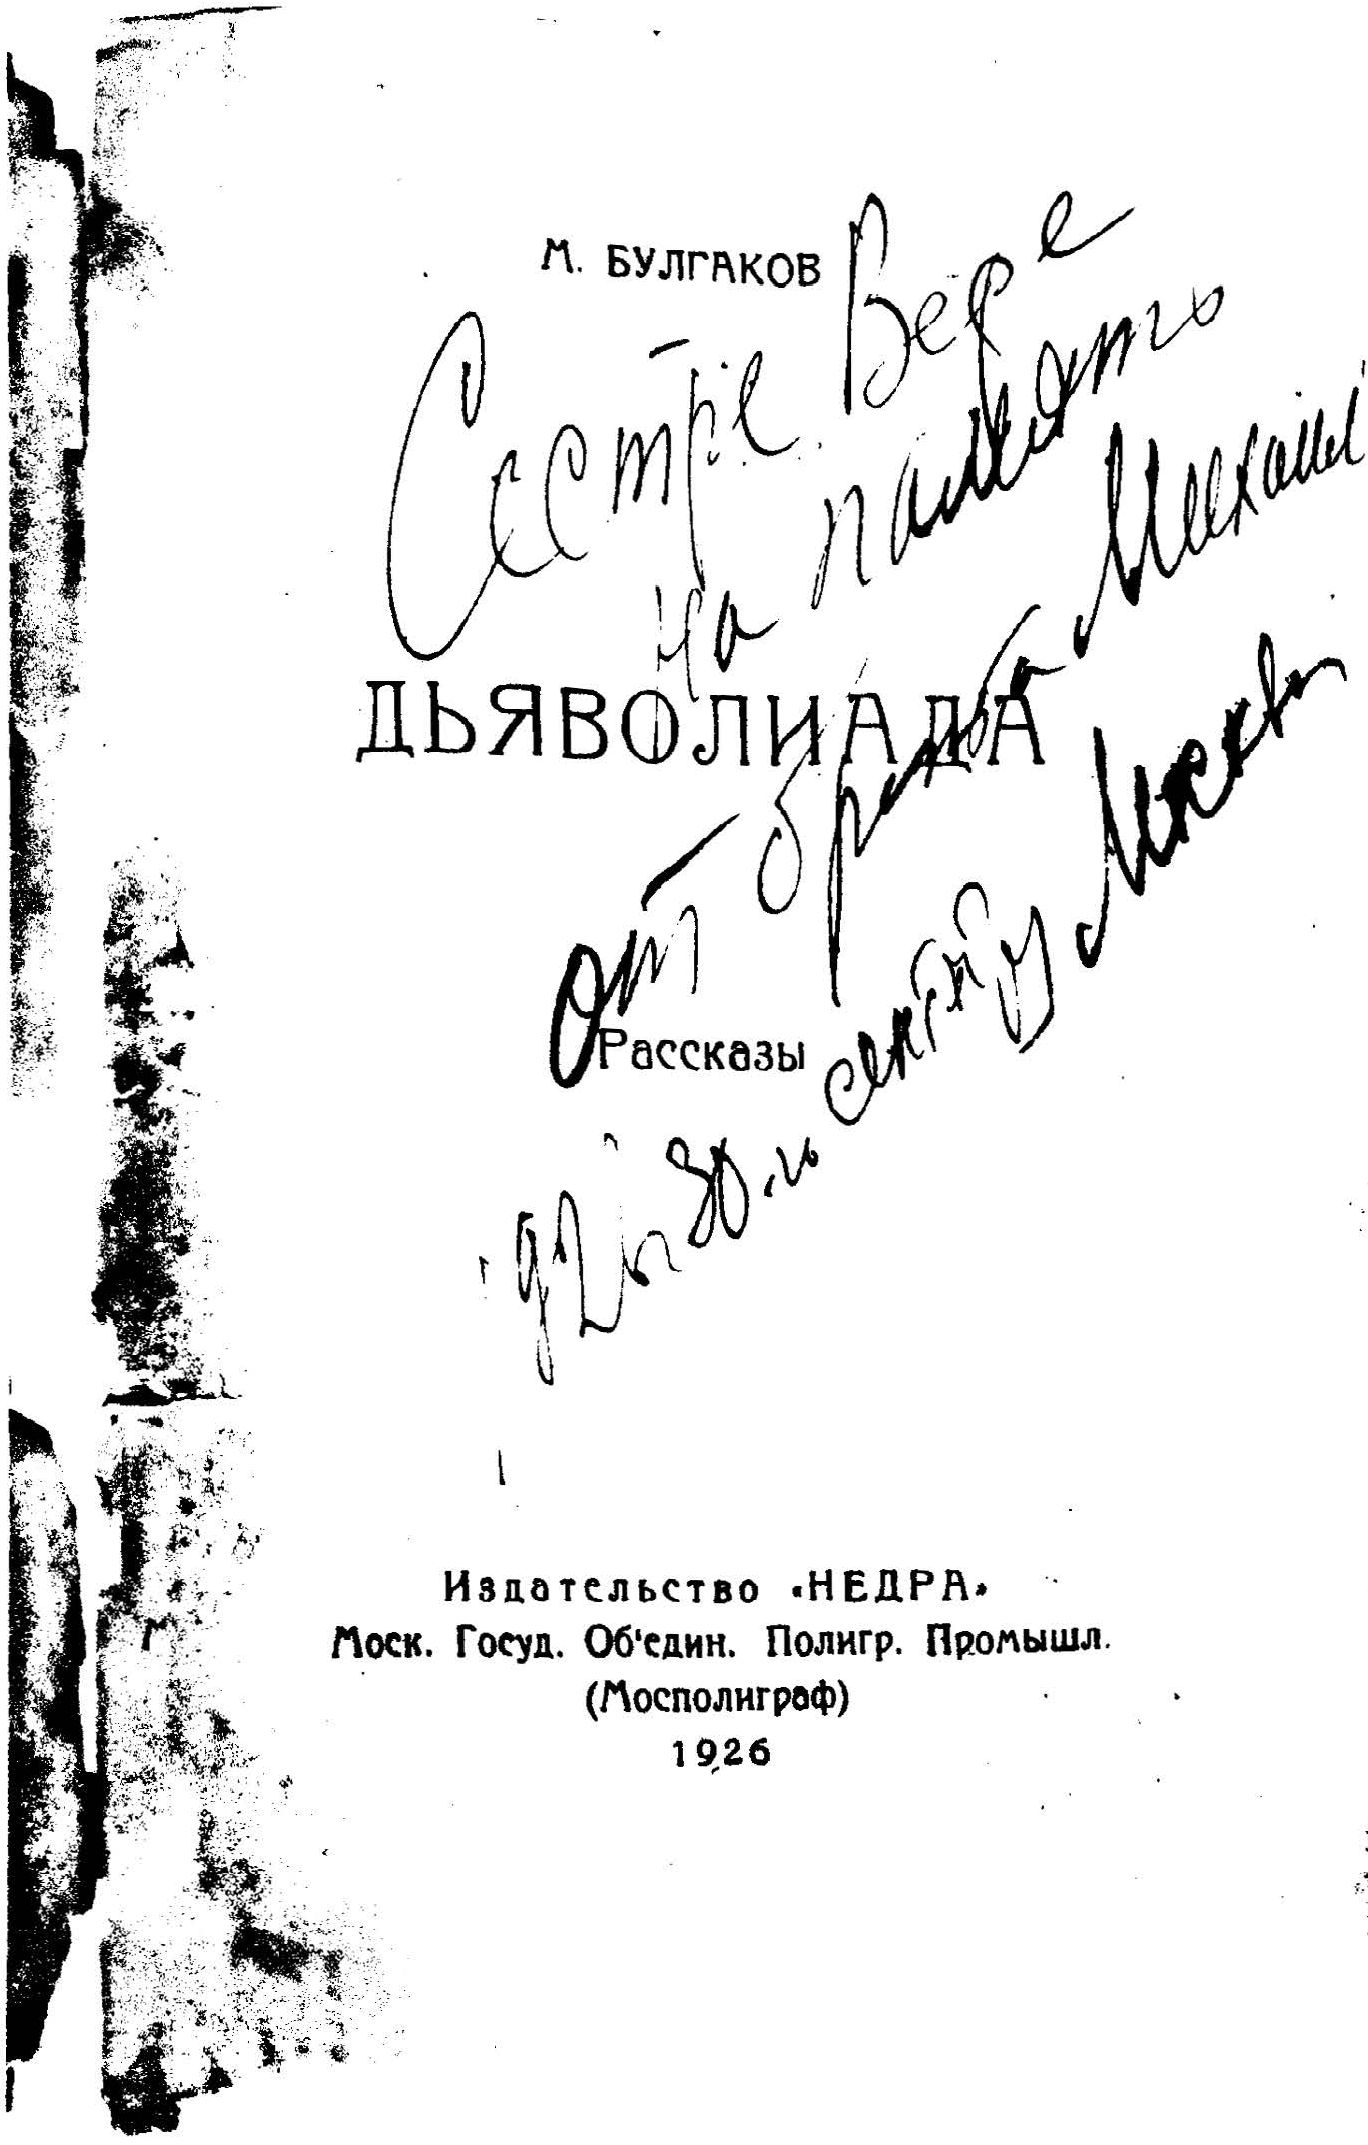 Ксерокопия обложки сборника М. Булгакова «Дьяволиада» с надписью «Сестре Вере на память о брате Мише»